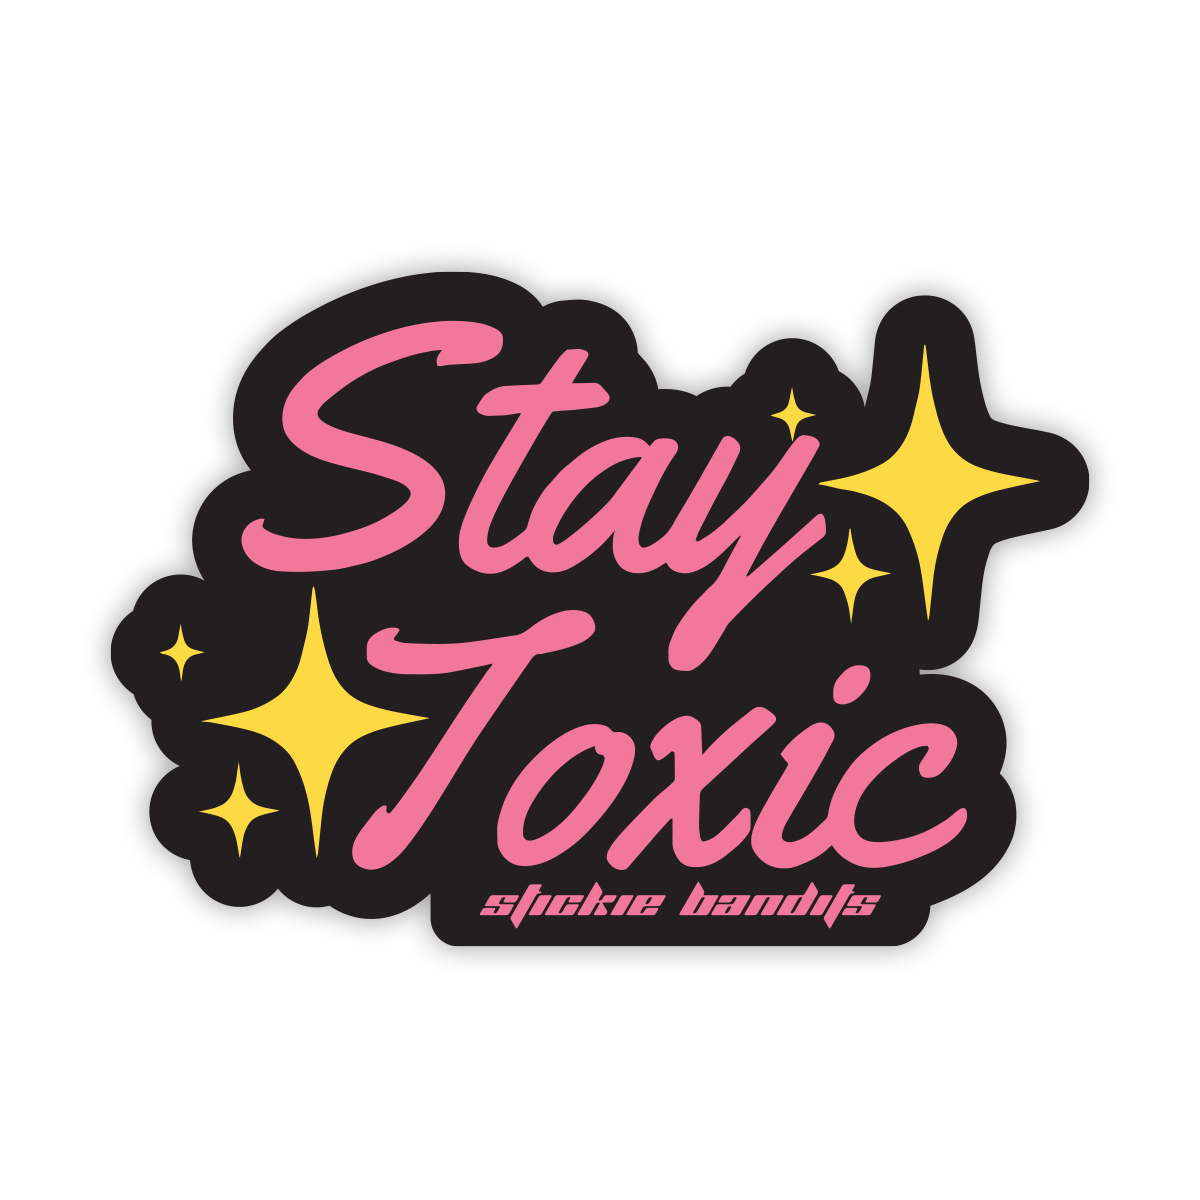 Stay Toxic Sticker